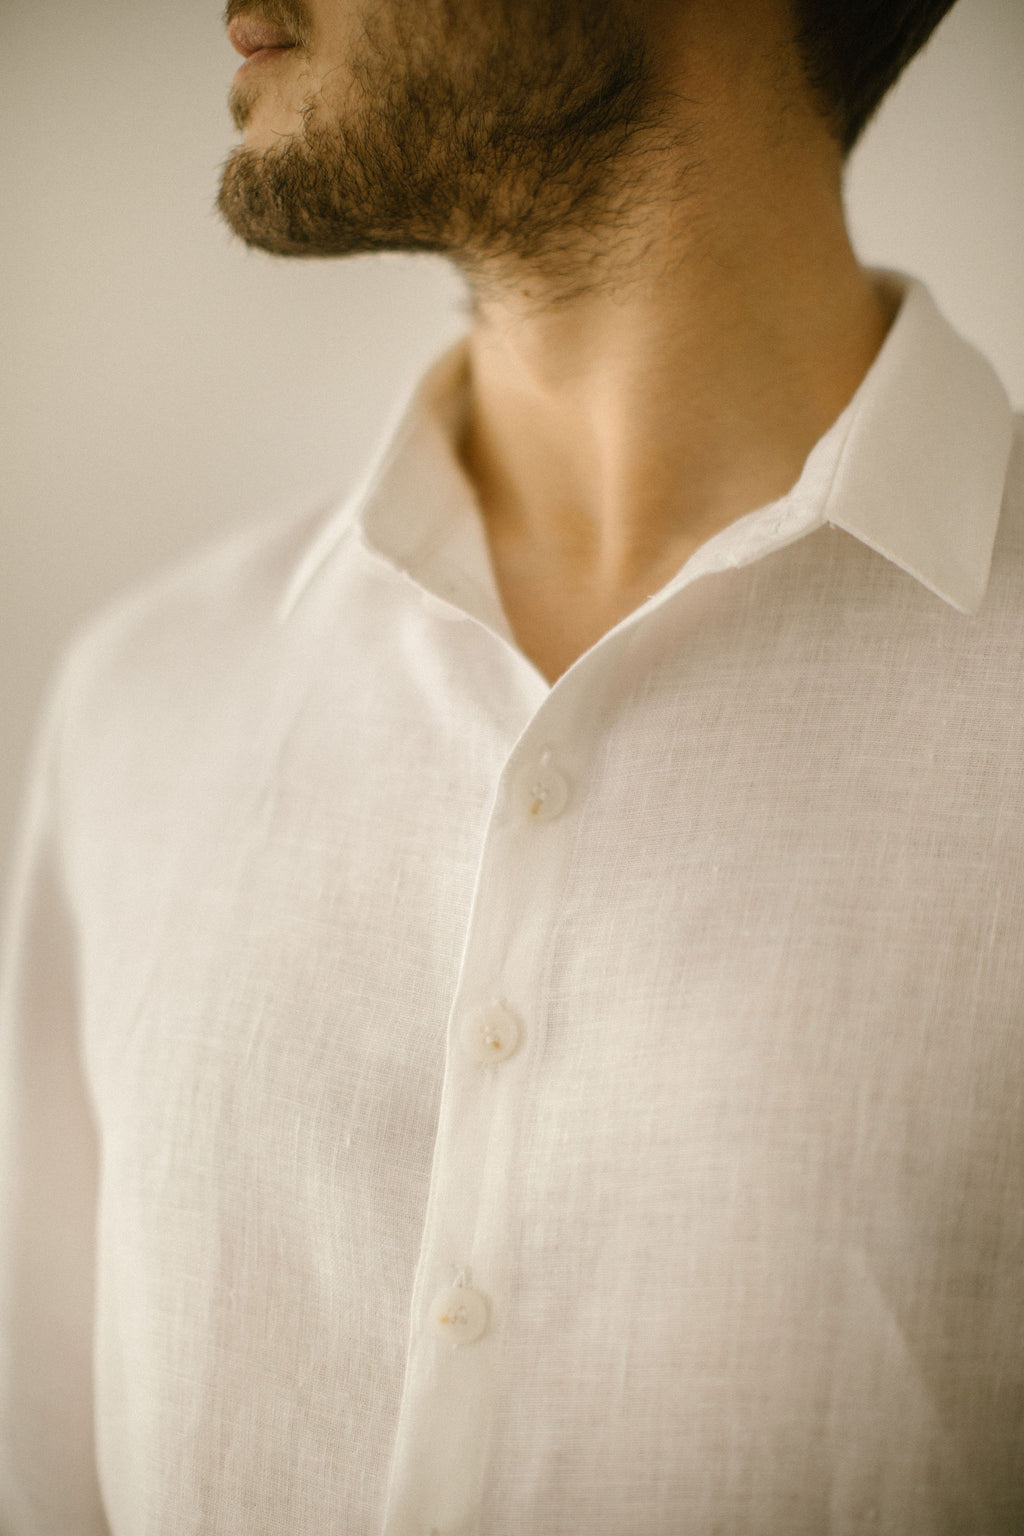 Linen groom shirt. Handcrafted by Linen Wedding Dress.